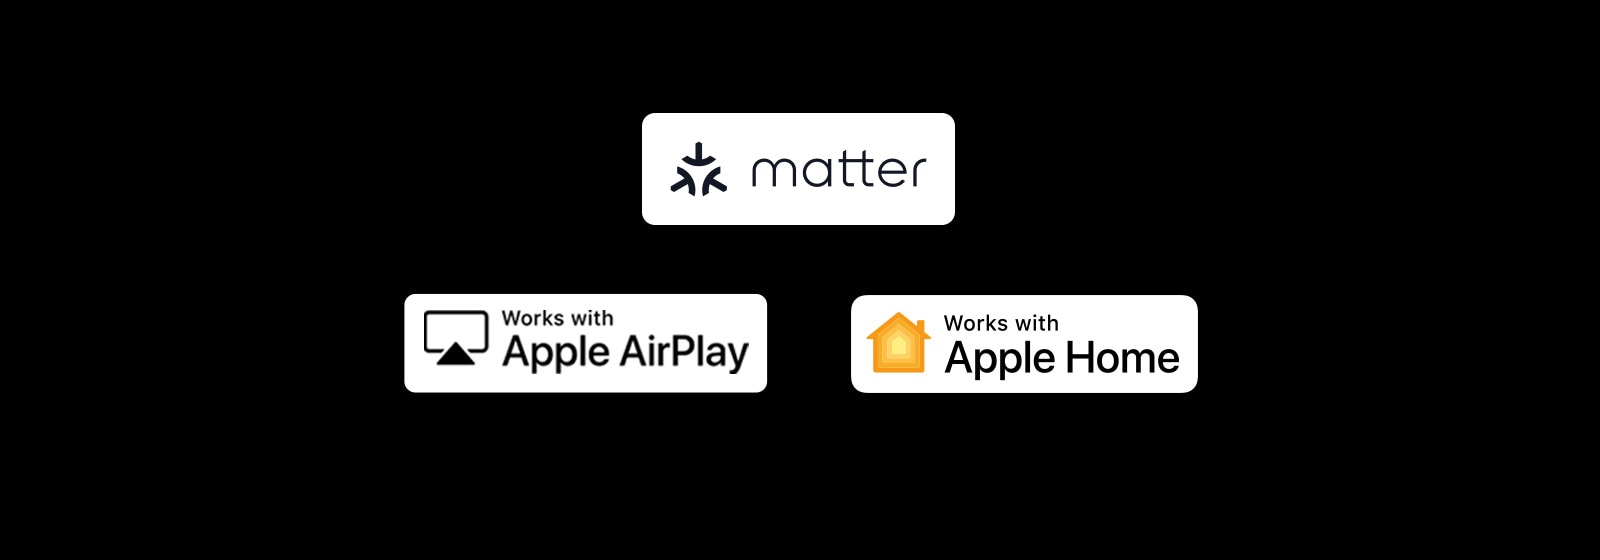 Logotip alexa vgrajen Logotip deluje z Apple Airplay Logotip deluje z "Logotip Apple AirPlay Logotip deluje z Apple Home Logotip deluje z MatterHome Logotip deluje z Matter